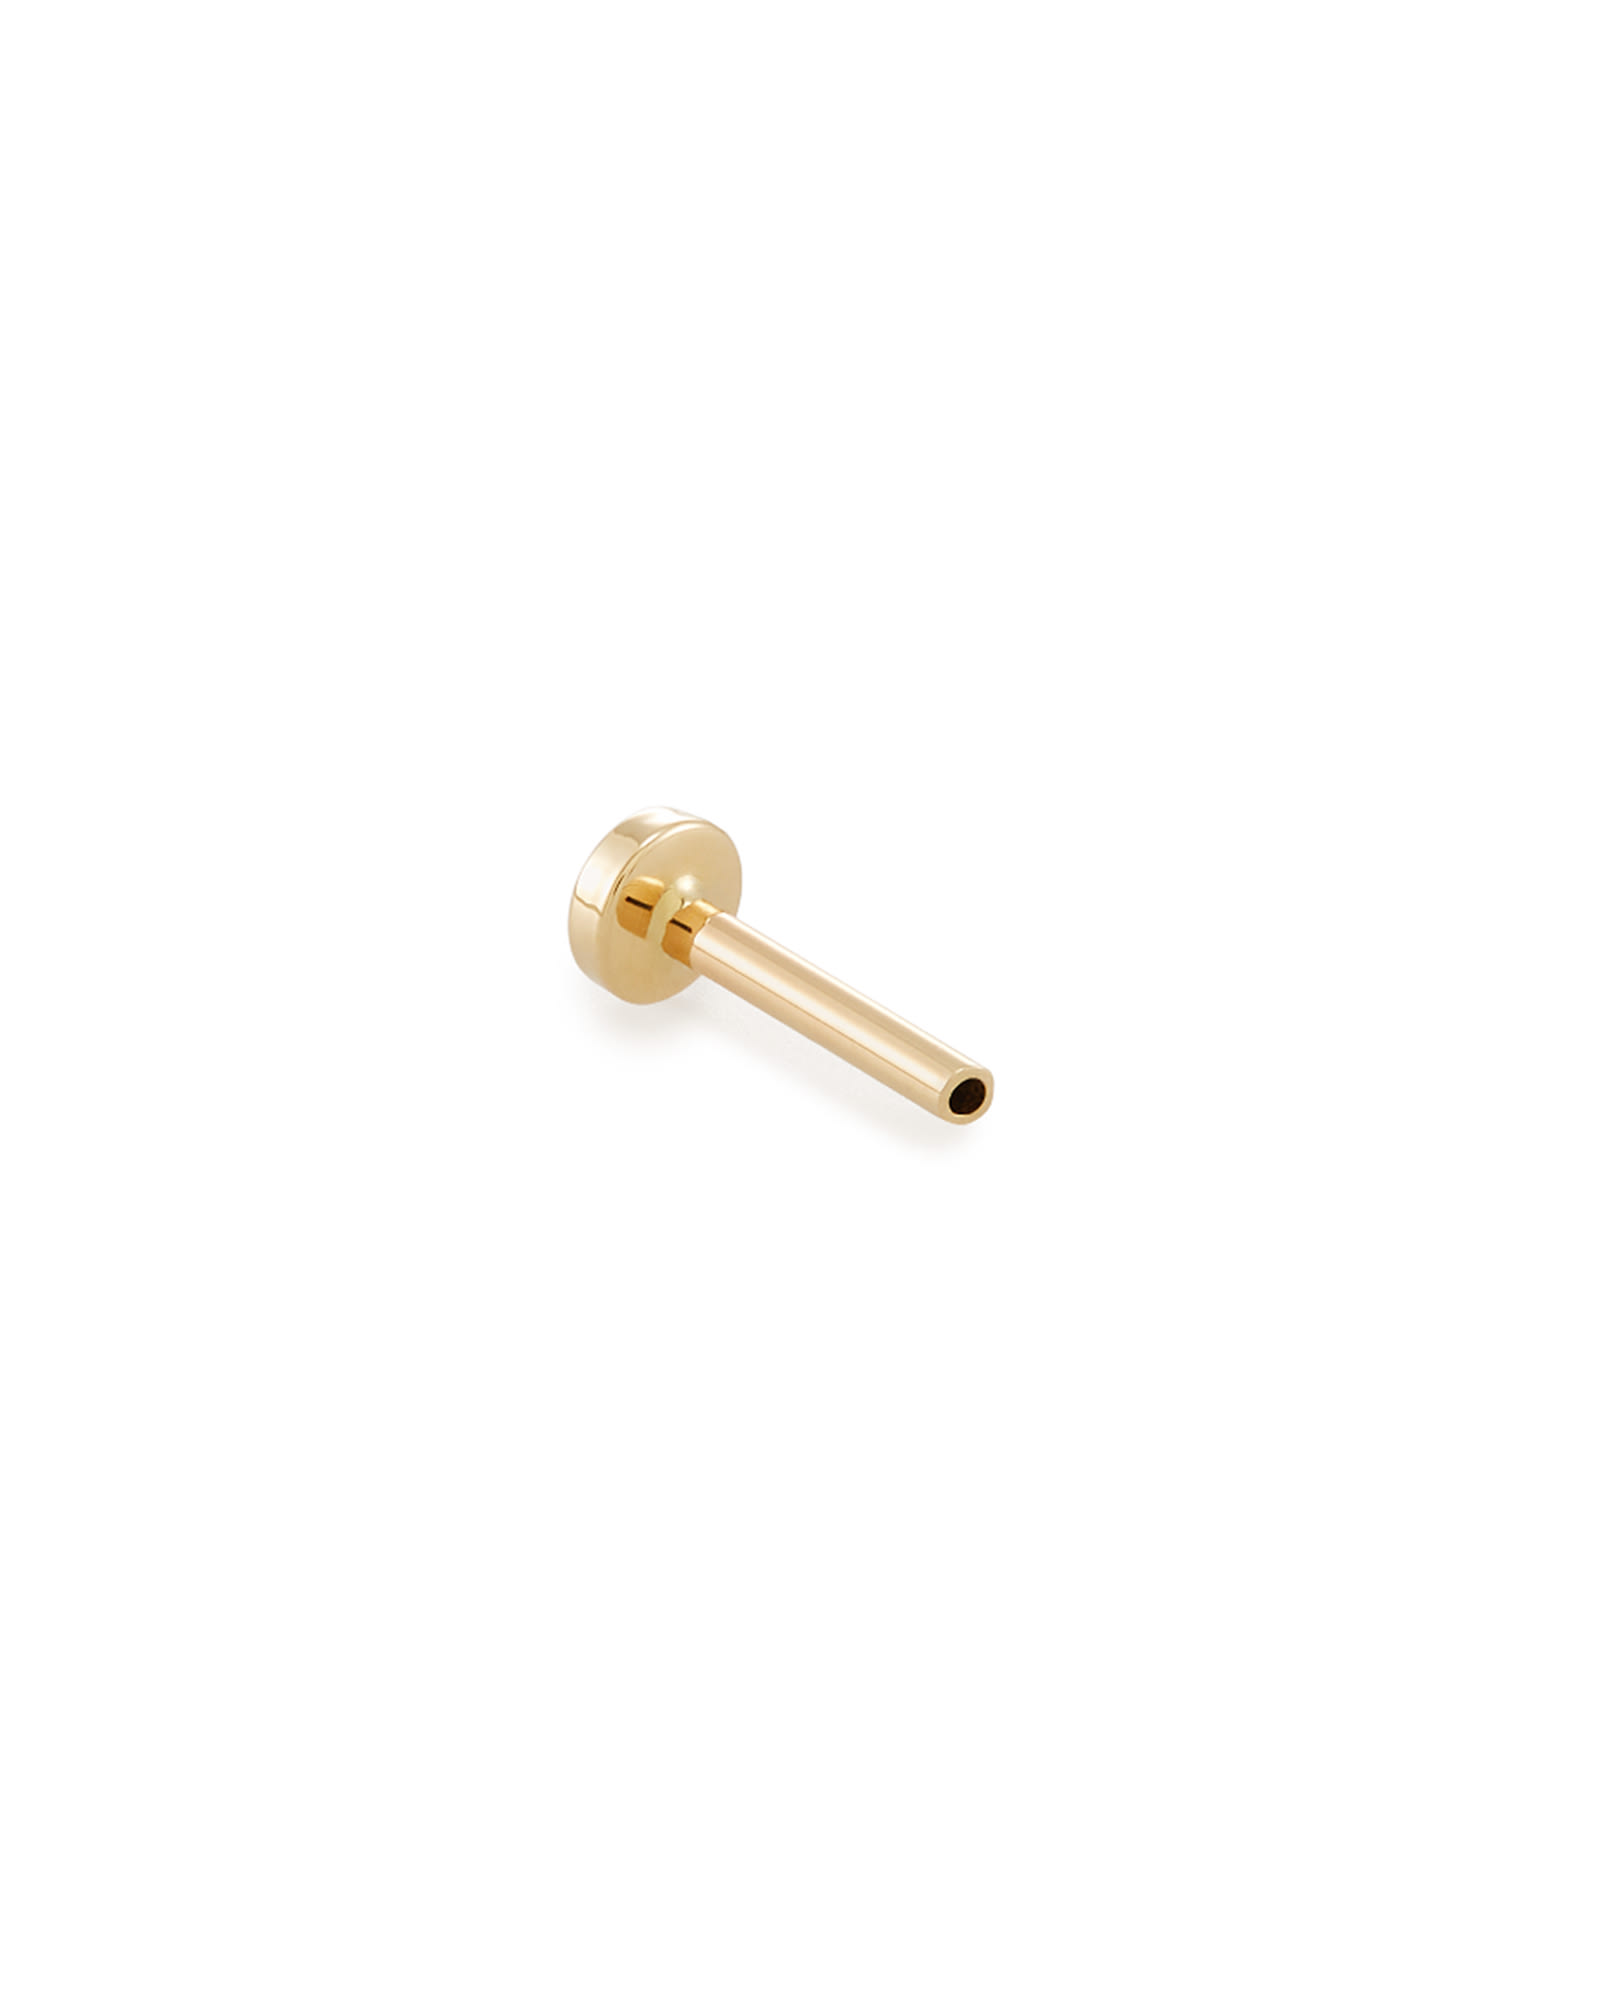 Kendra Scott 6.5mm Single Stud Earring Push Back in | 14K Yellow Gold